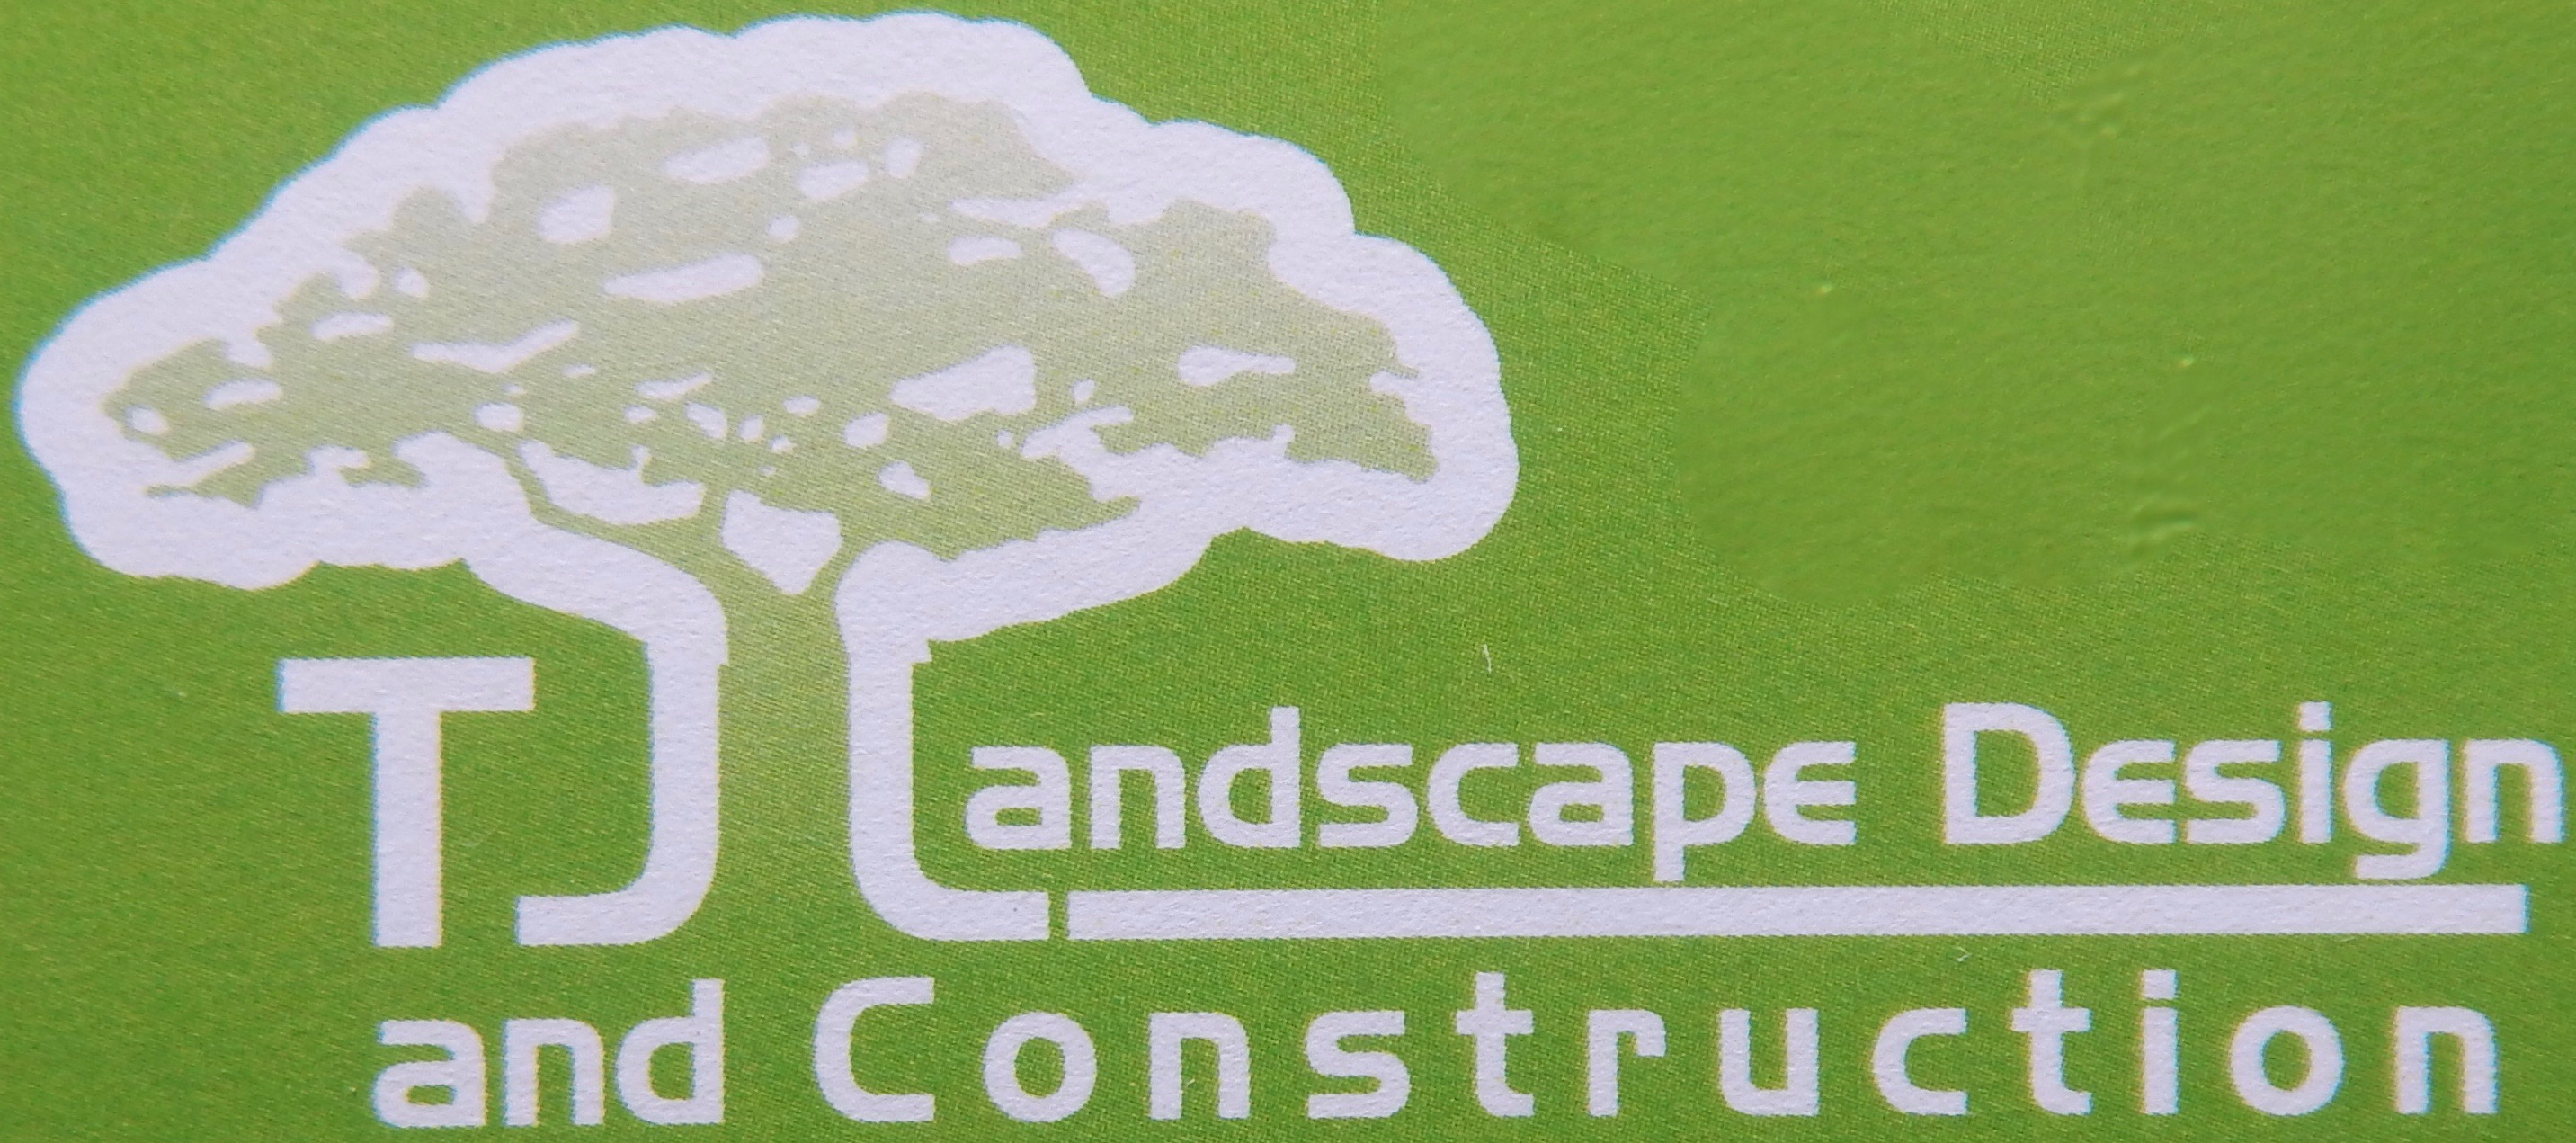 TJ Landscape Design and Construction, Inc. Logo